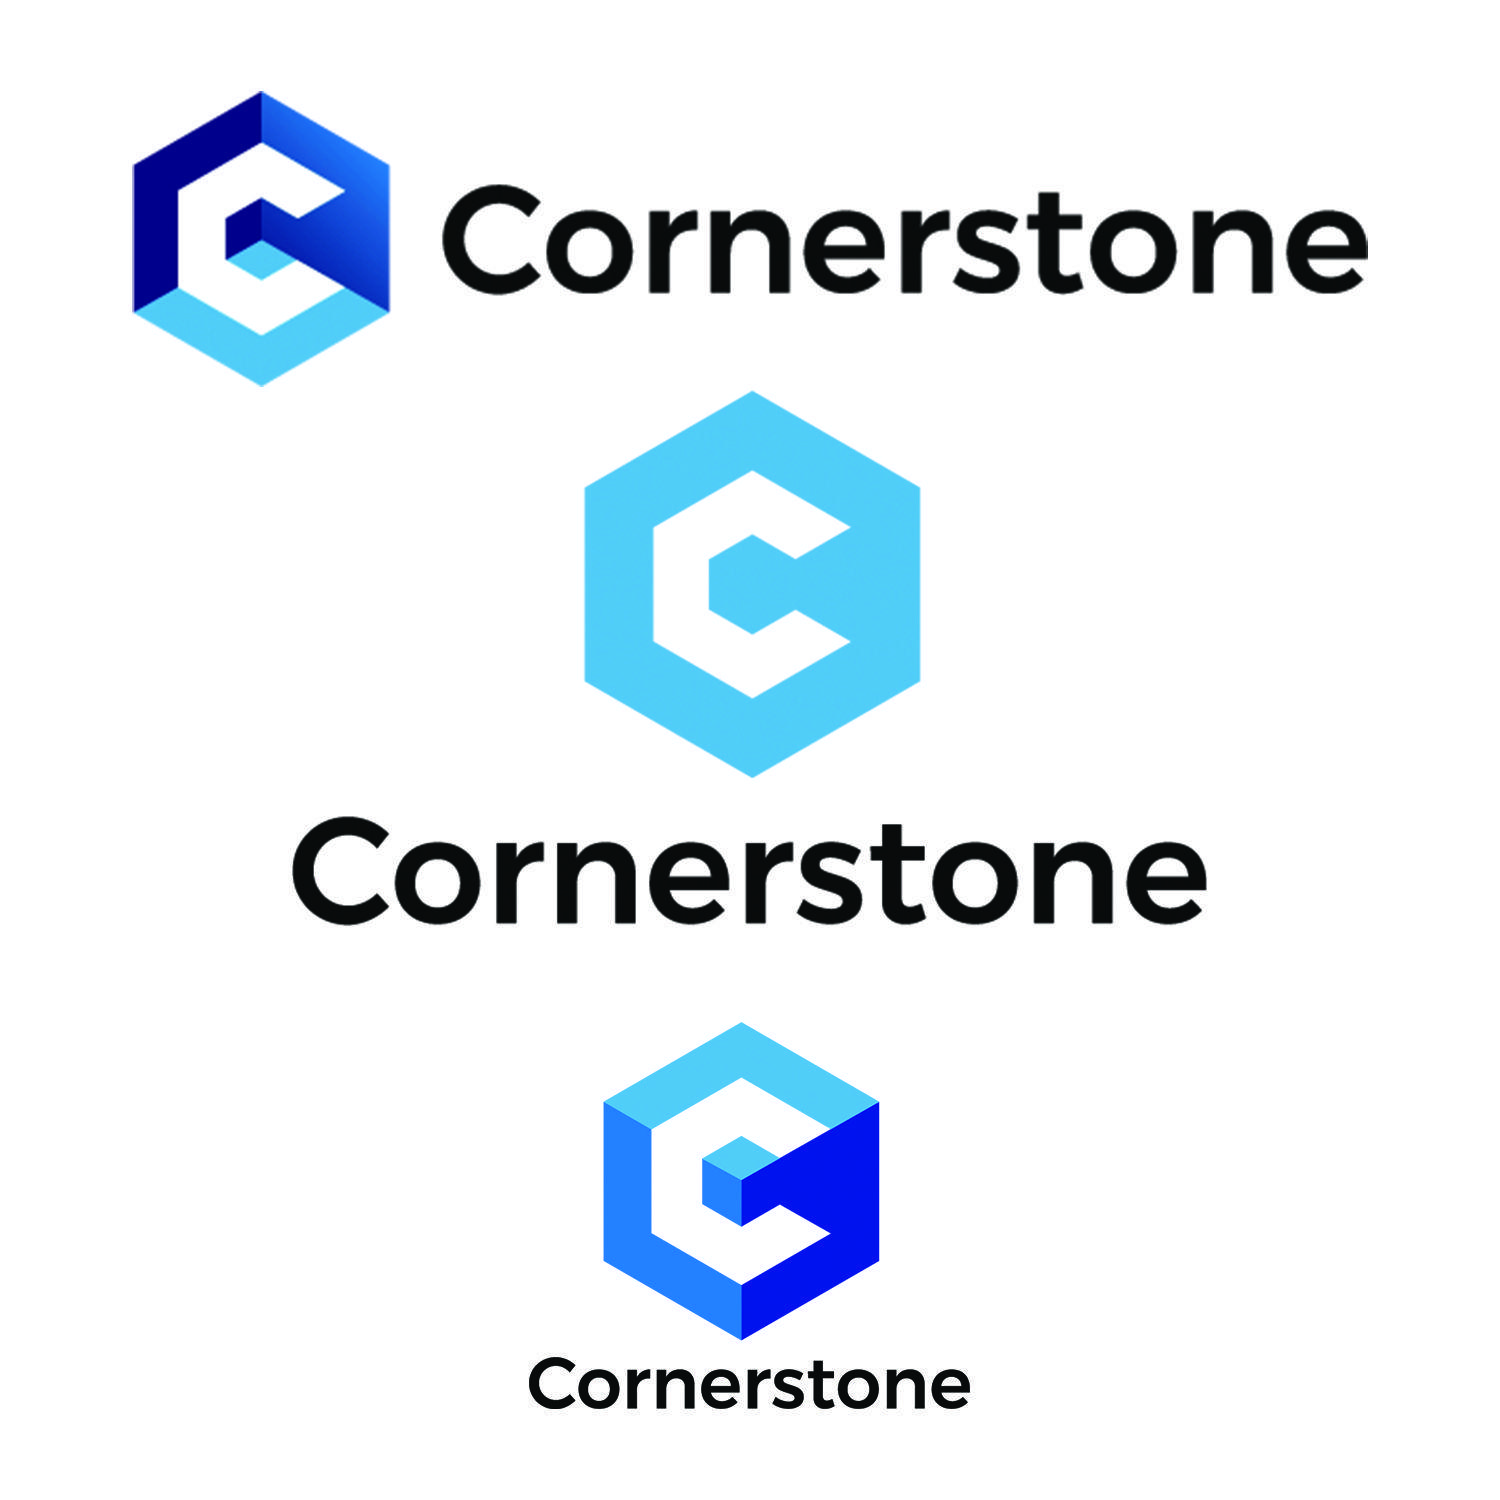 Cornerstone Logo - Modern, Colorful, Non Profit Logo Design for Cornerstone